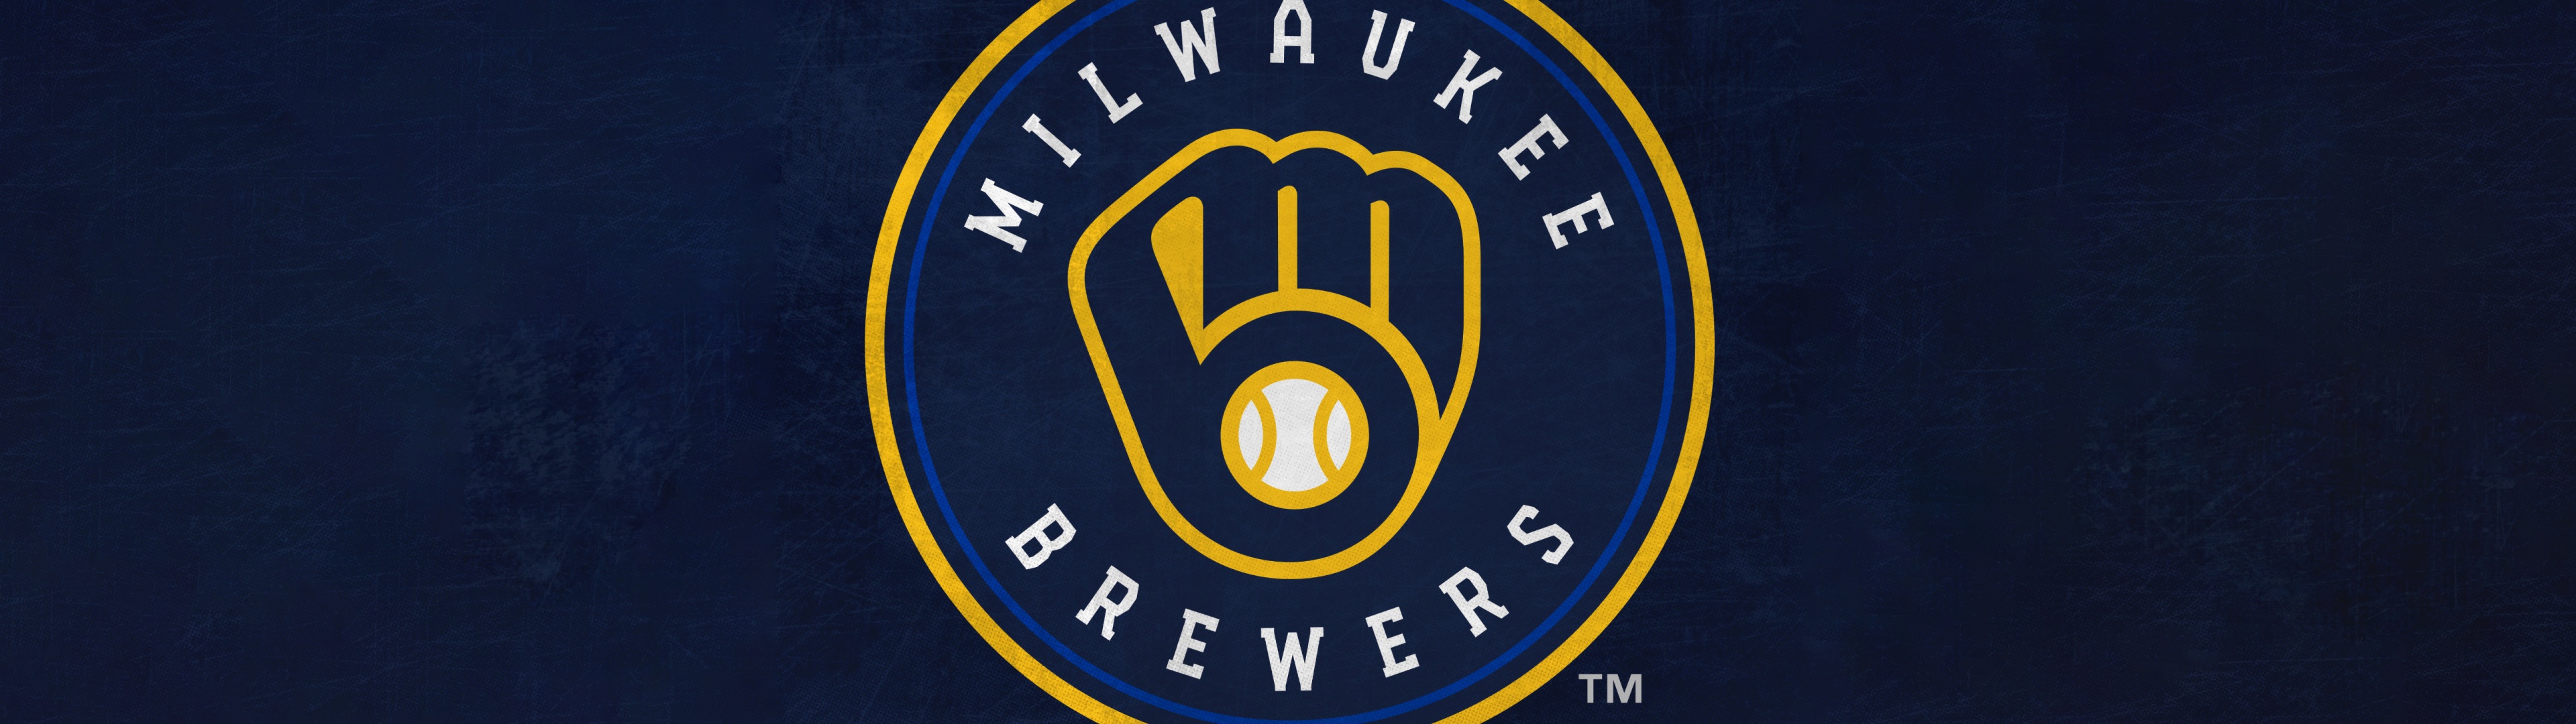 Milwaukee Brewers Wallpaper 4K, Baseball team